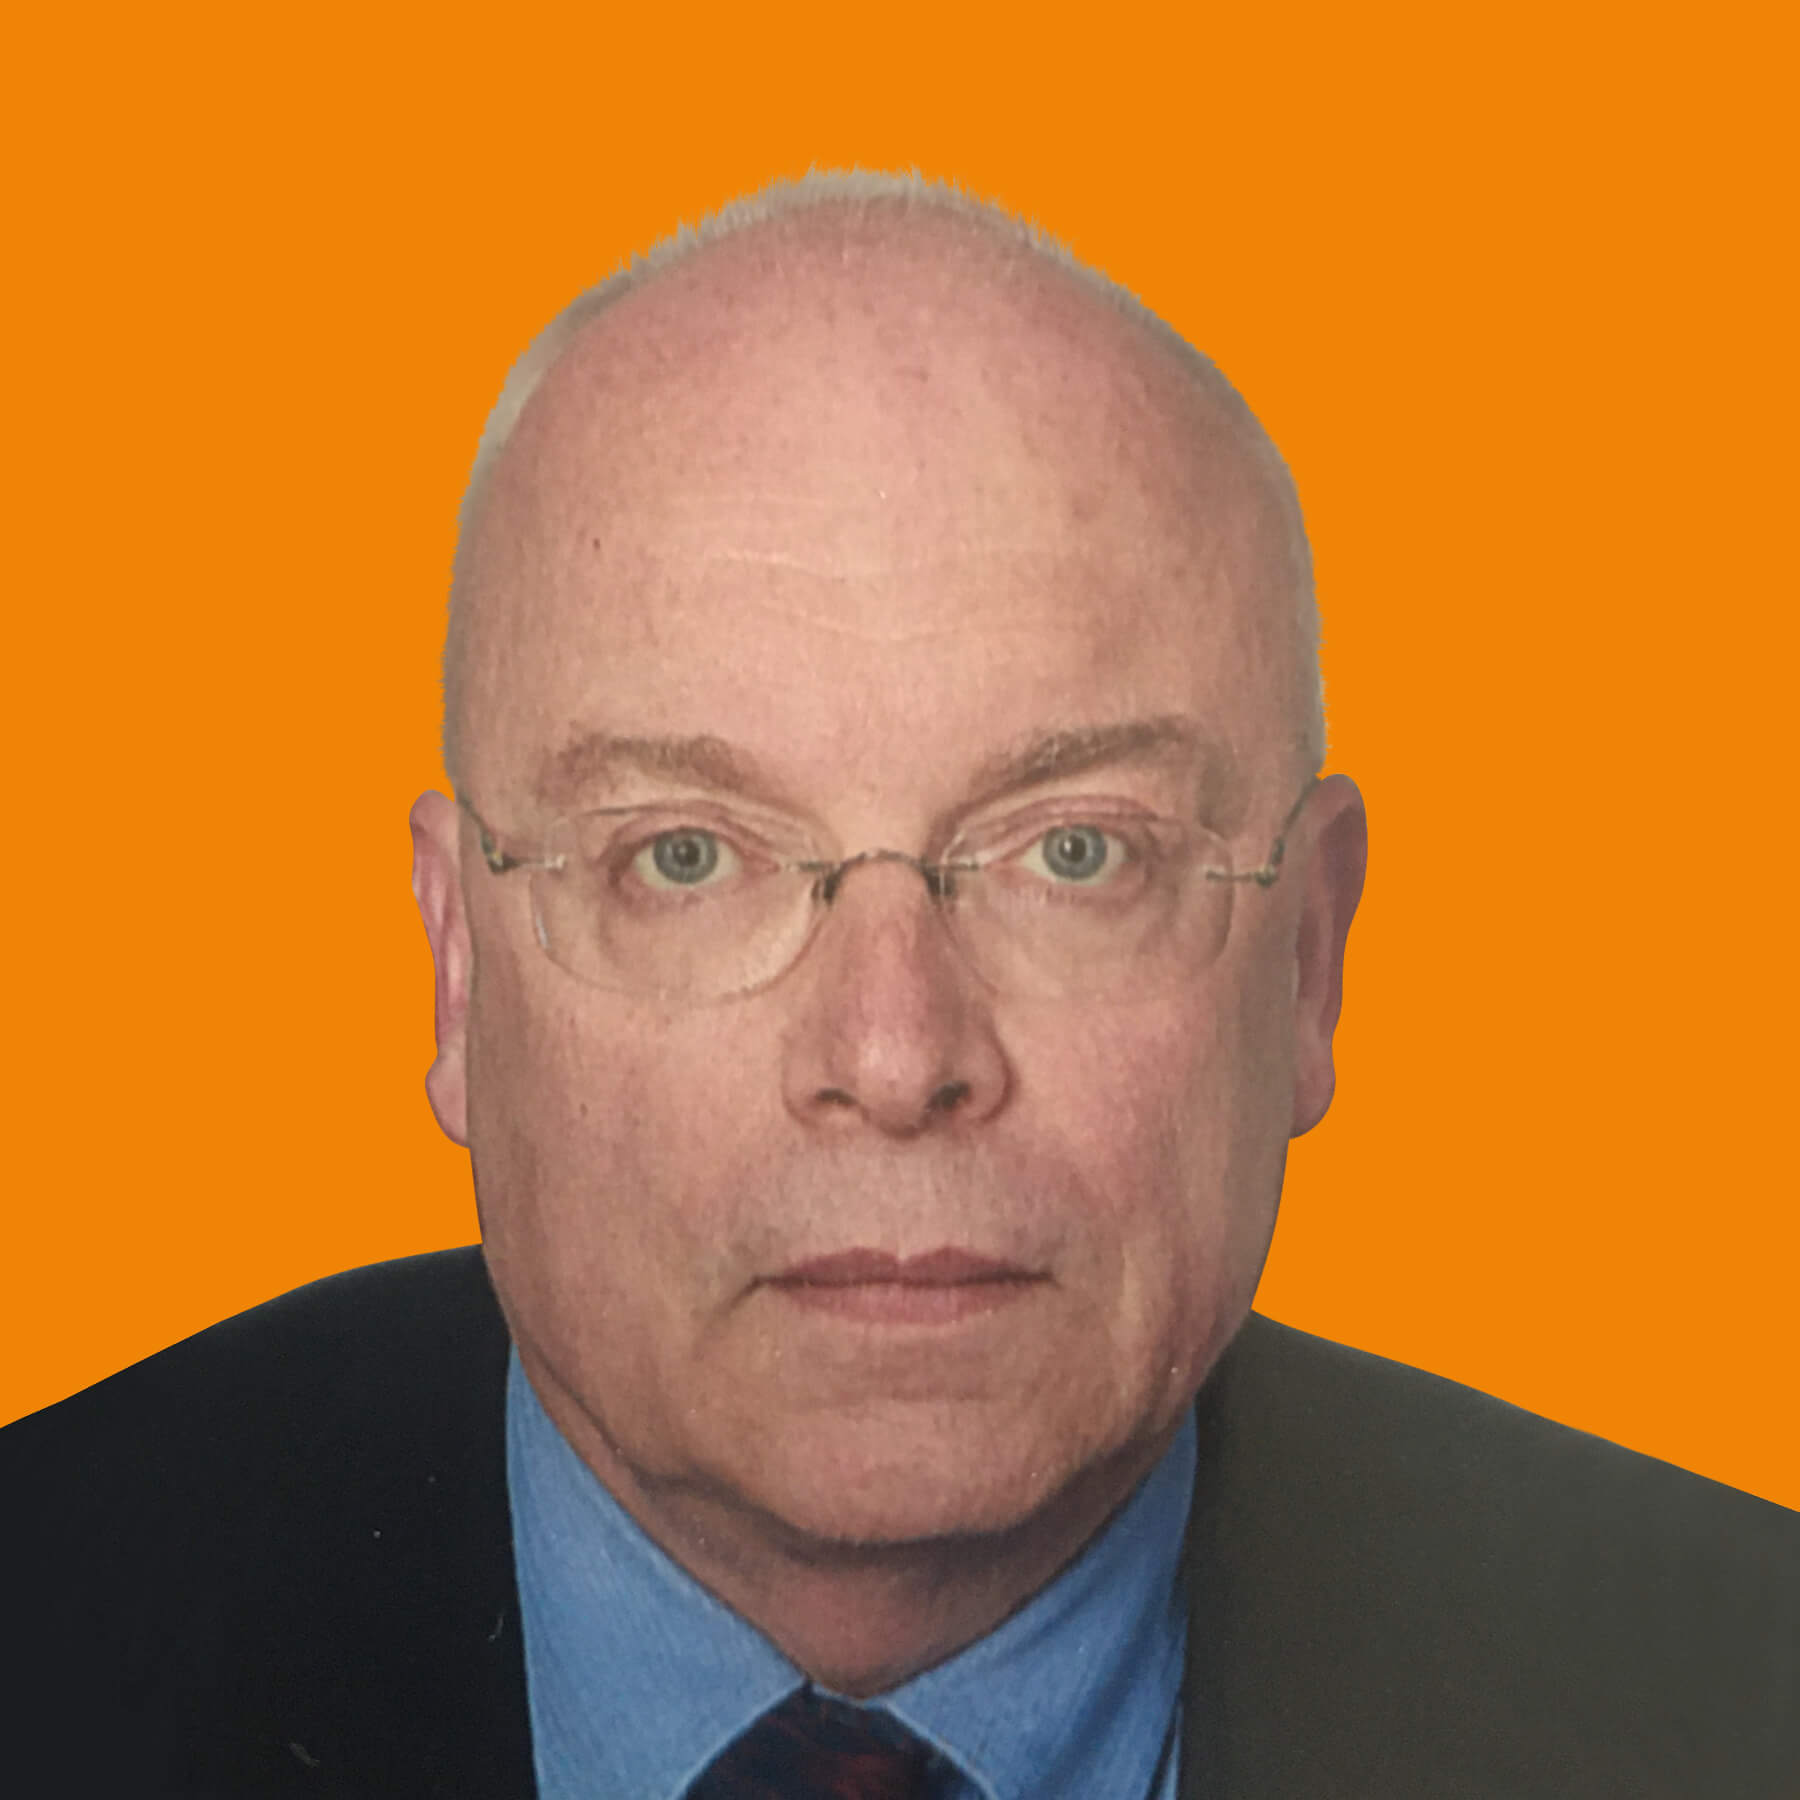 Karl-Heinz Morschhaeuser